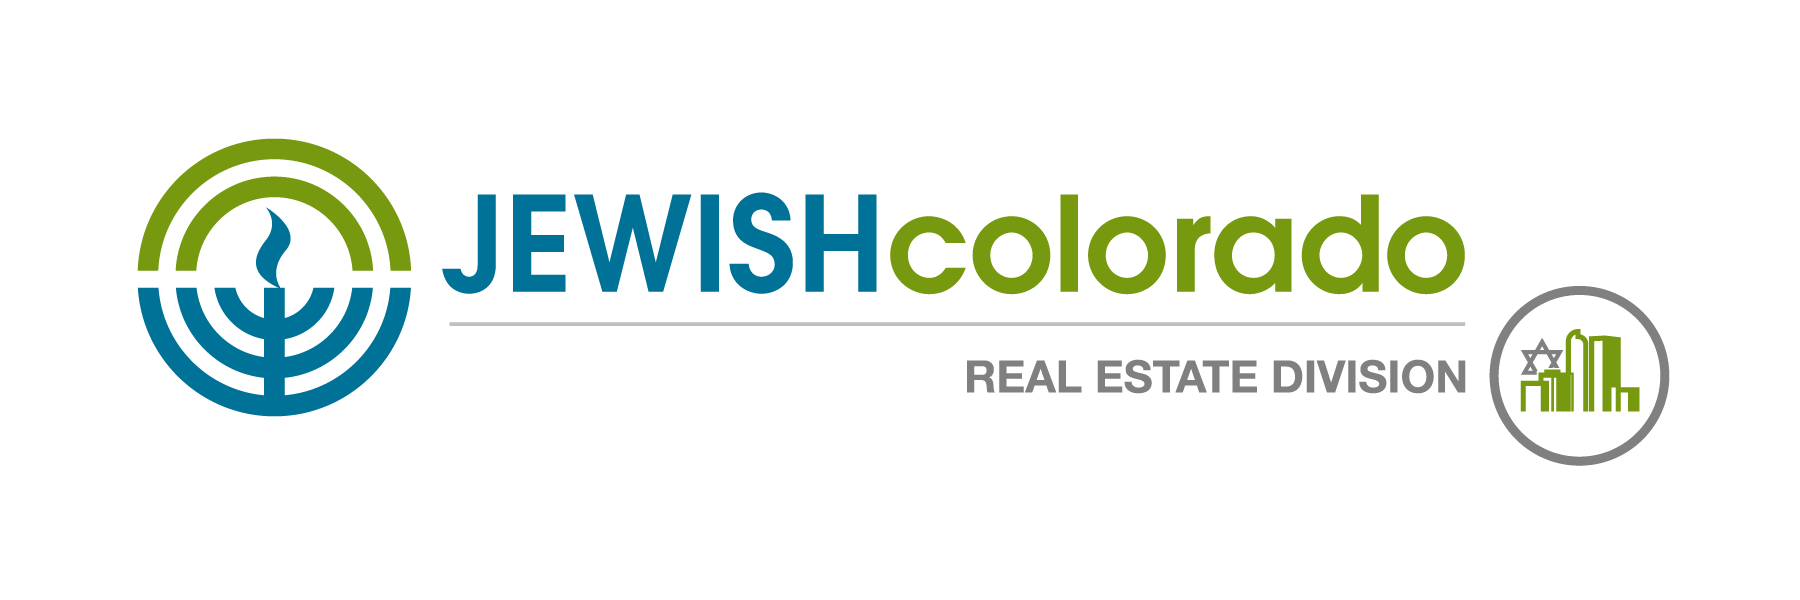 JEWISHcolorado Real Estate logo